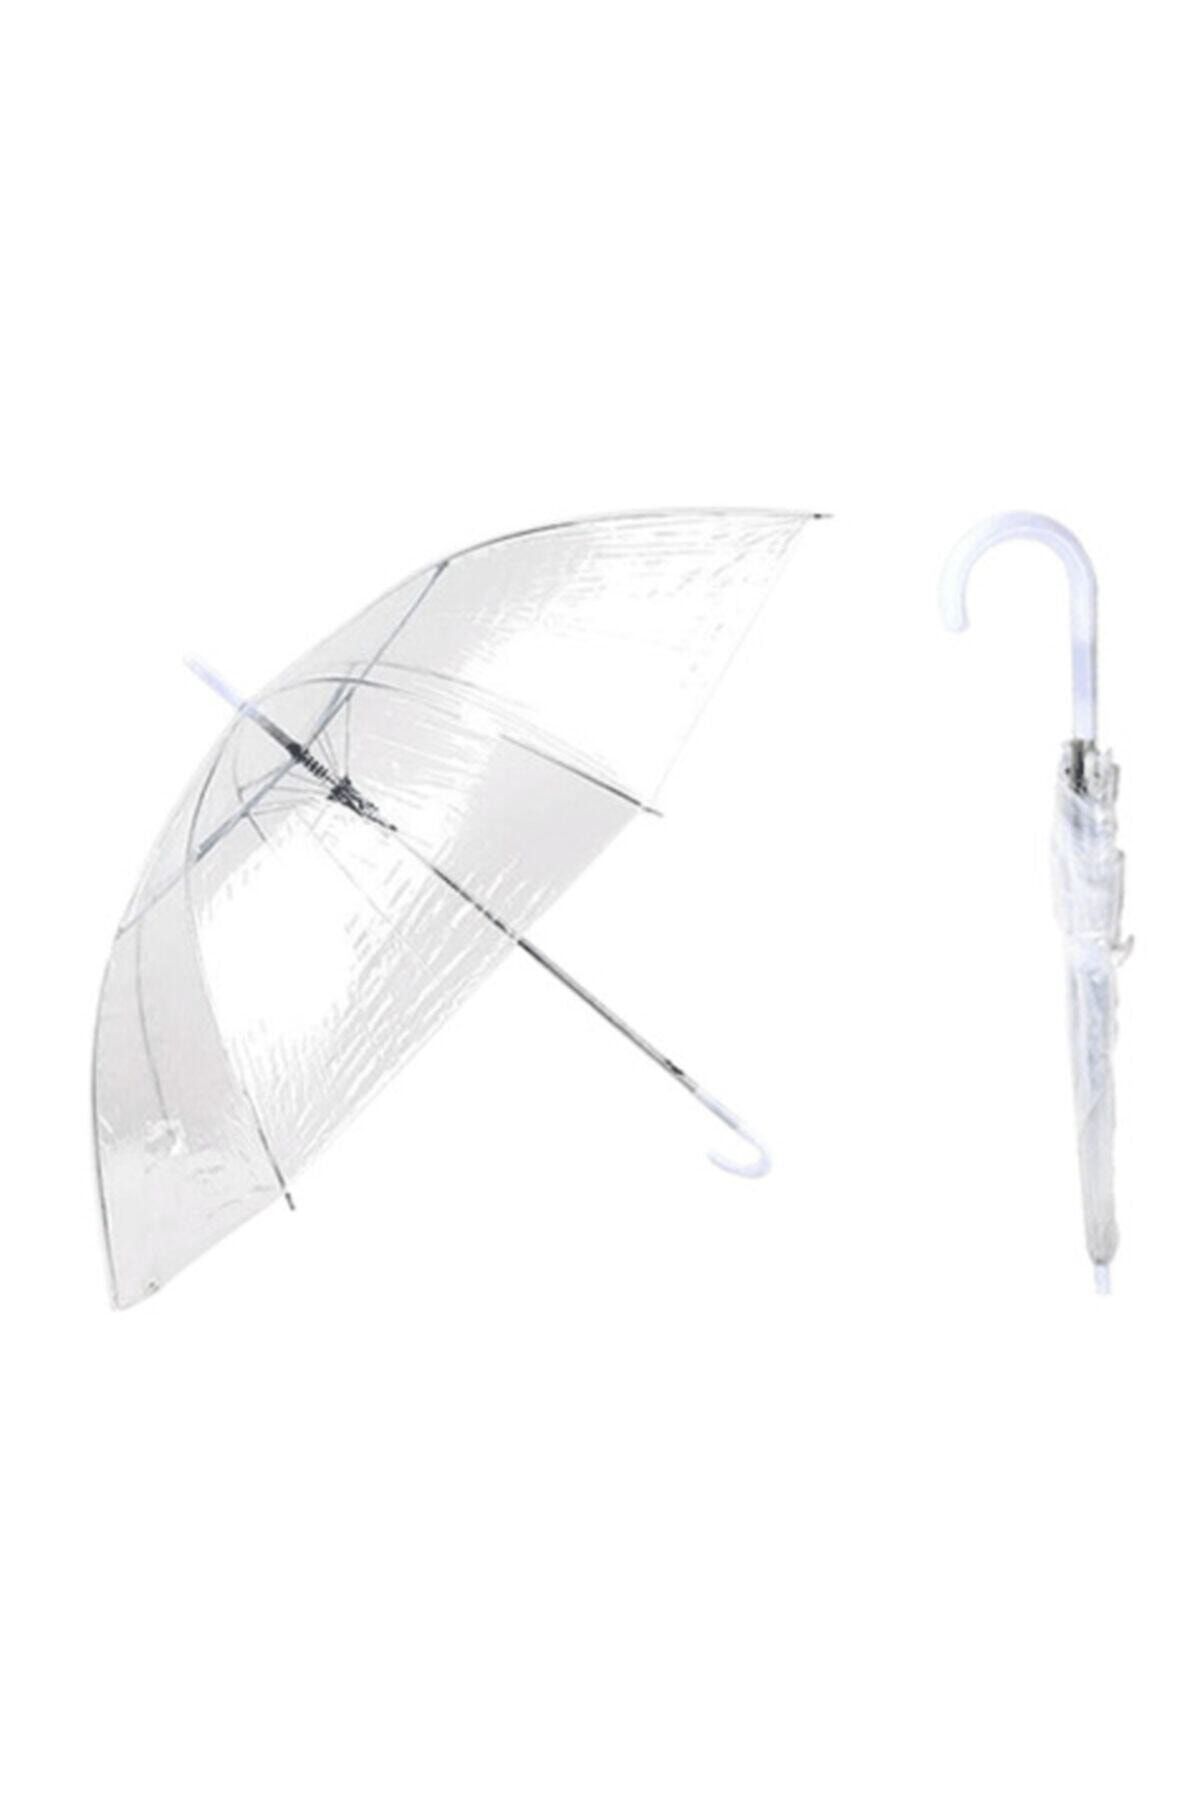 Genel Markalar Şemsiye Şeffaf Tam Otomatik Açılabilme Şık Zarif Yağmurluk Şemsiye Su Geçirmez Pratik Kullanım